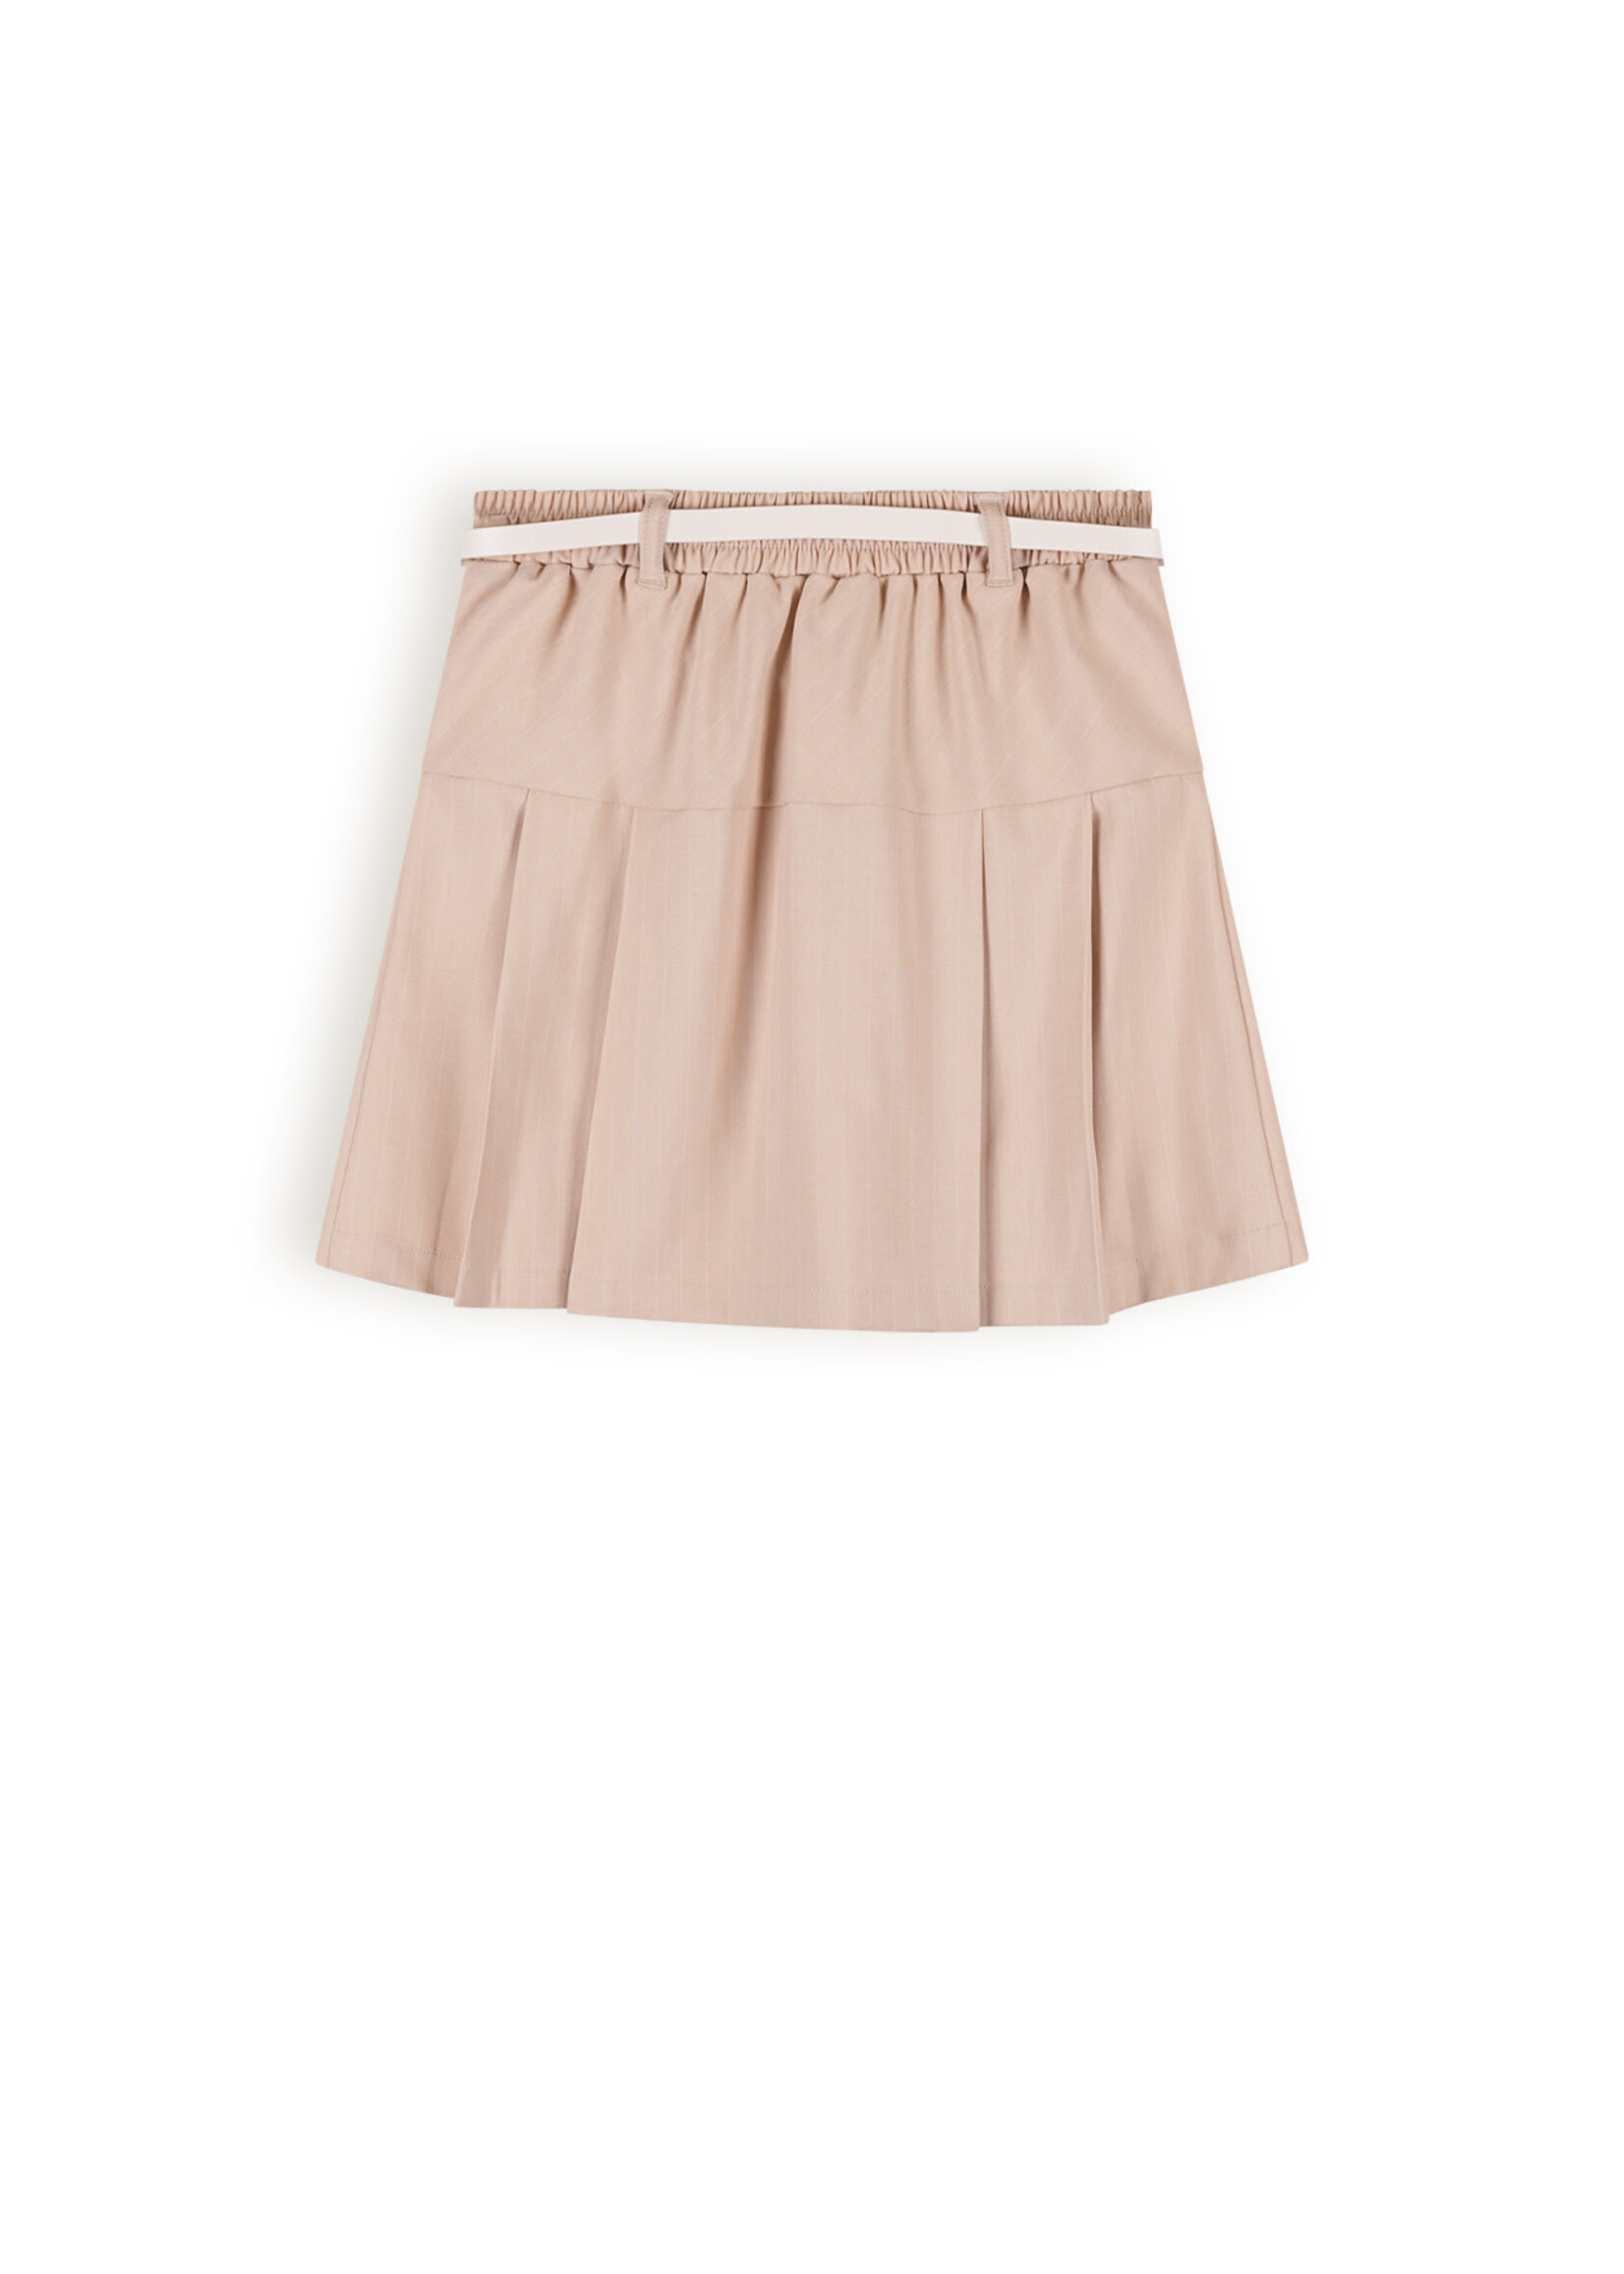 Nobell Nobell Nimmy Pinstripe skirt with Belt Q402-3702 Rosy Sand